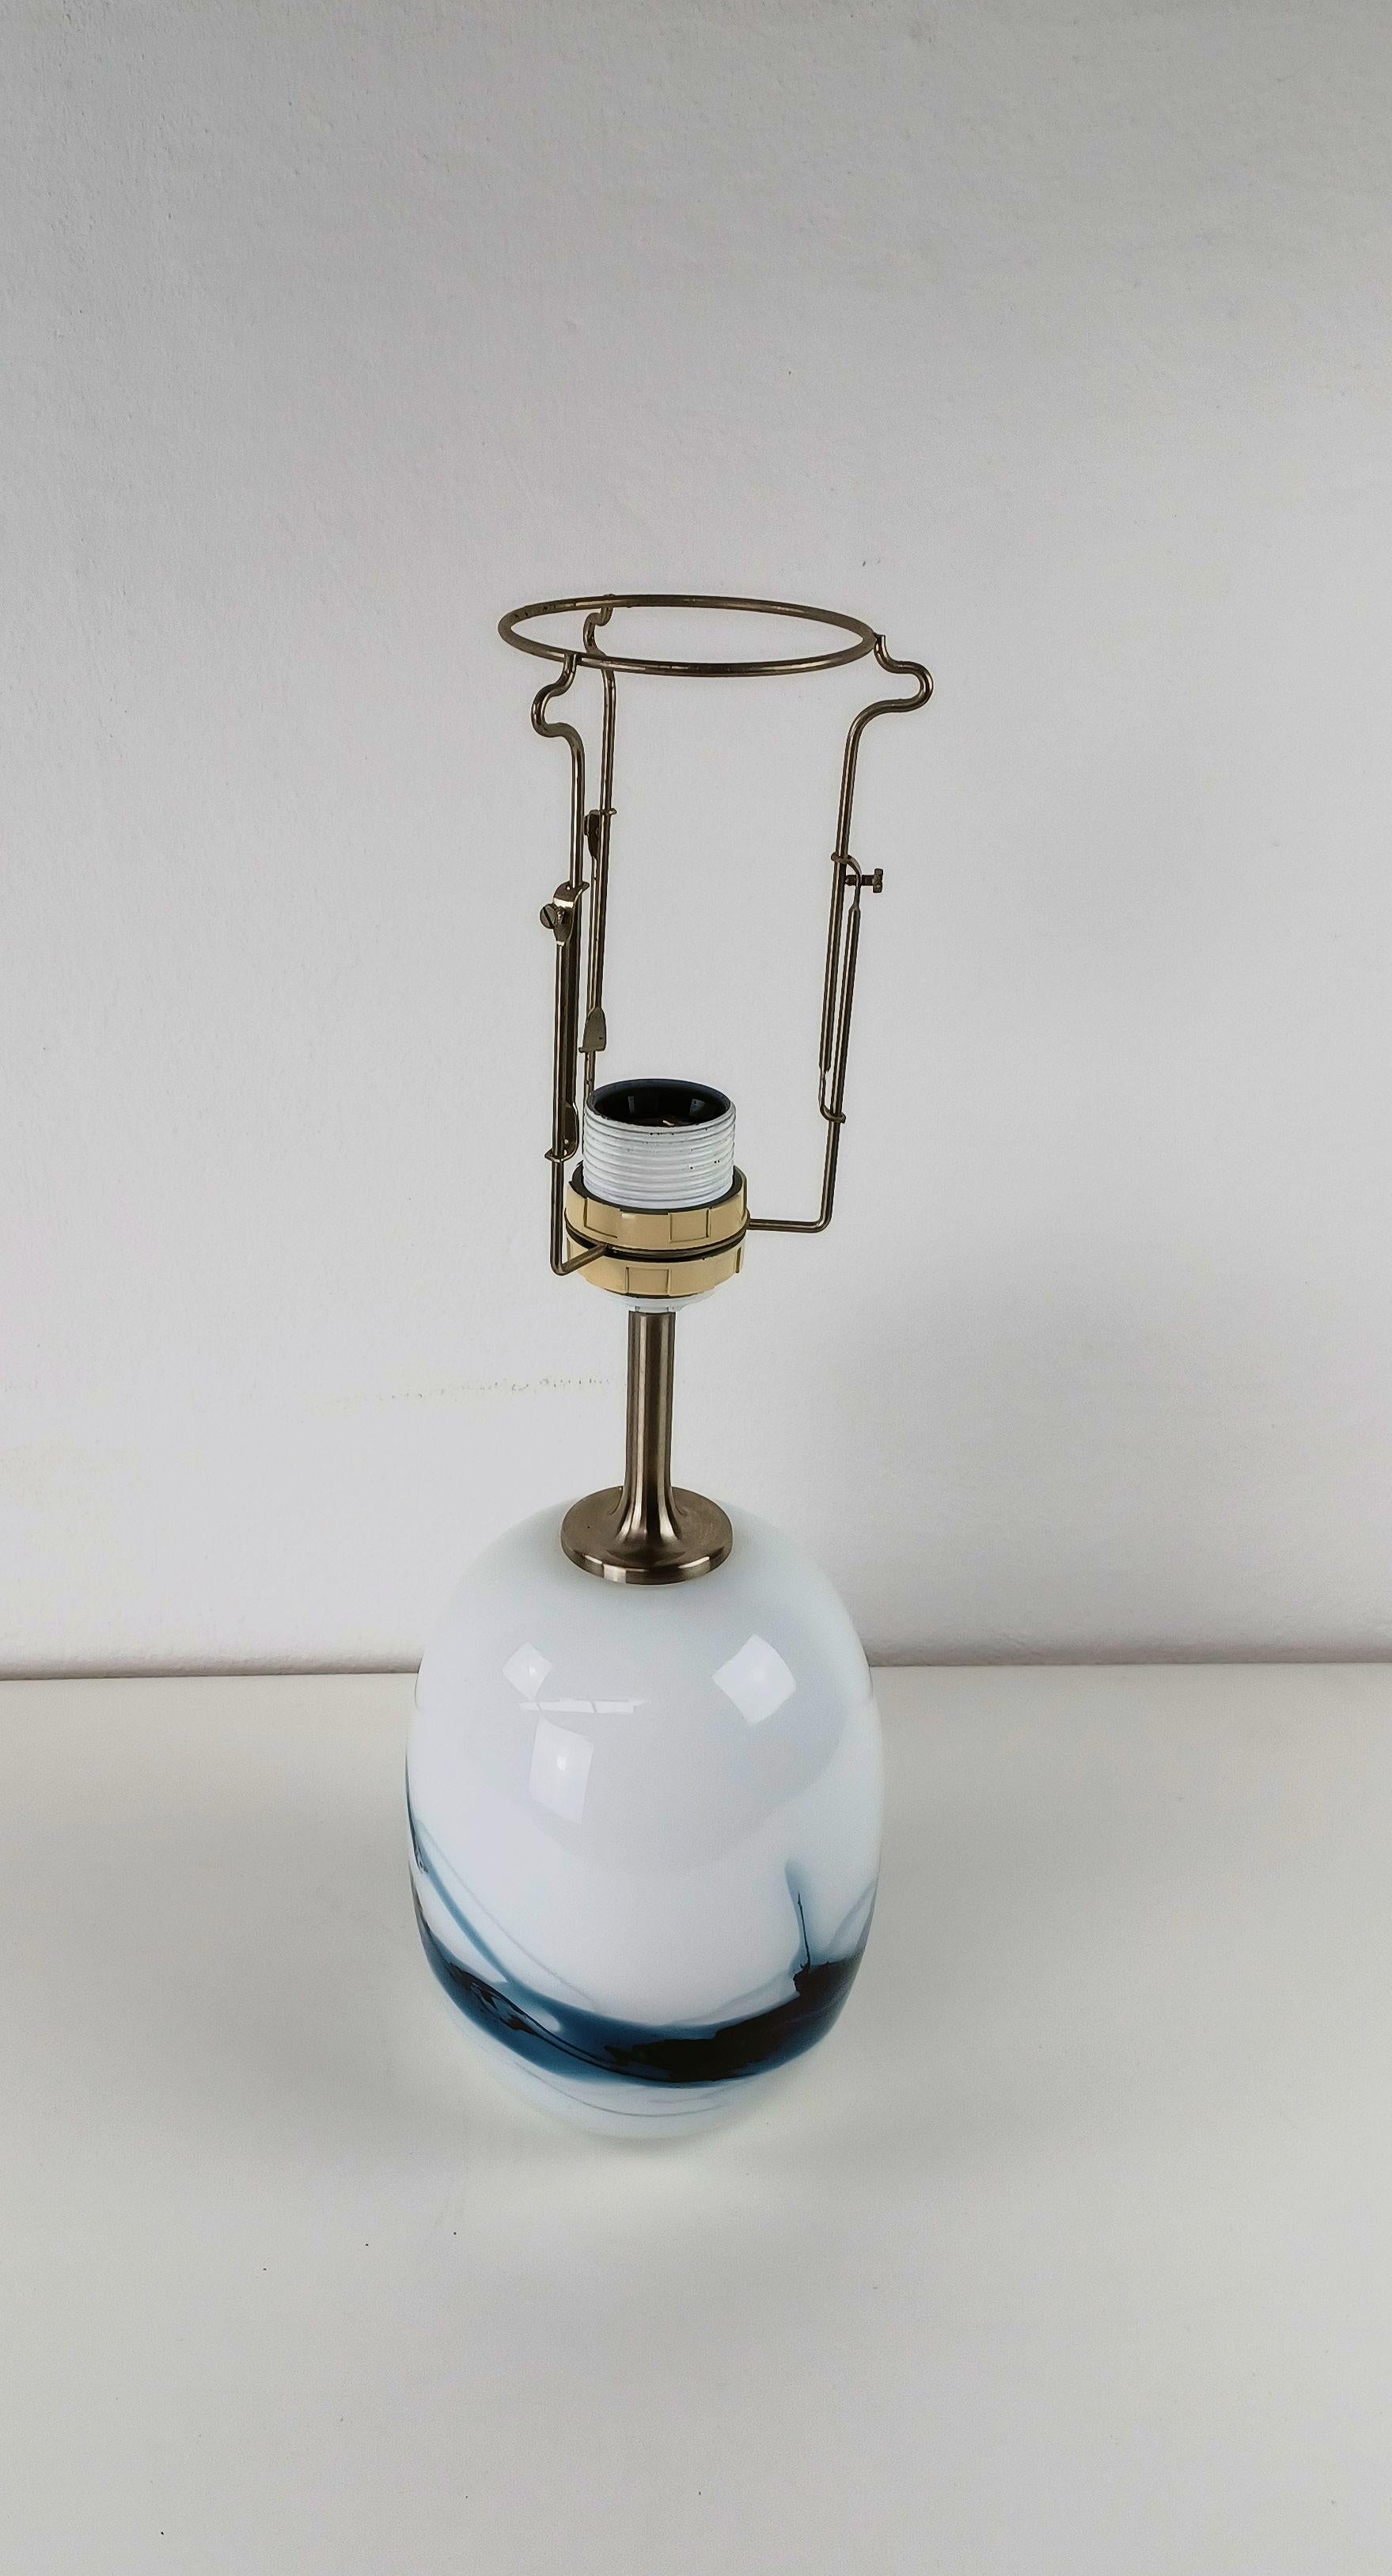 Lampe de table en verre soufflé Sakura, Michael Bang, 1980

La lampe de table a été conçue en 1984 par Mickael Bang pour Holmegaard Glass et est en très bon état.

La hauteur de la lampe de table va jusqu'à l'endroit où commence la douille.